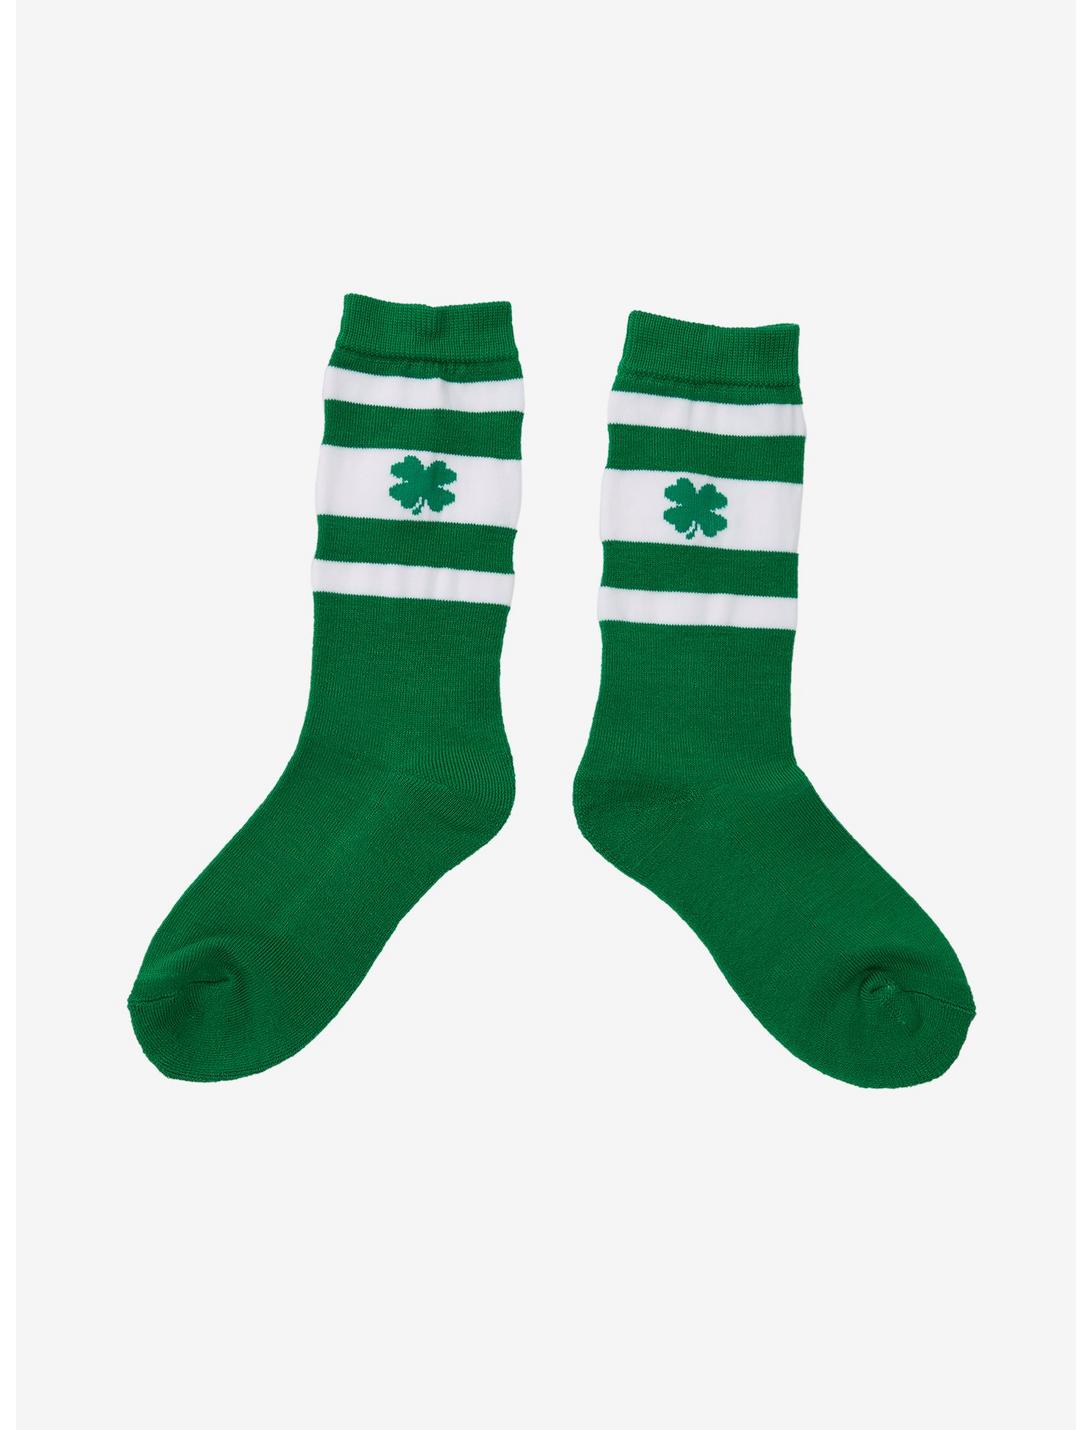 Four-Leaf Clover Green & White Crew Socks, , hi-res